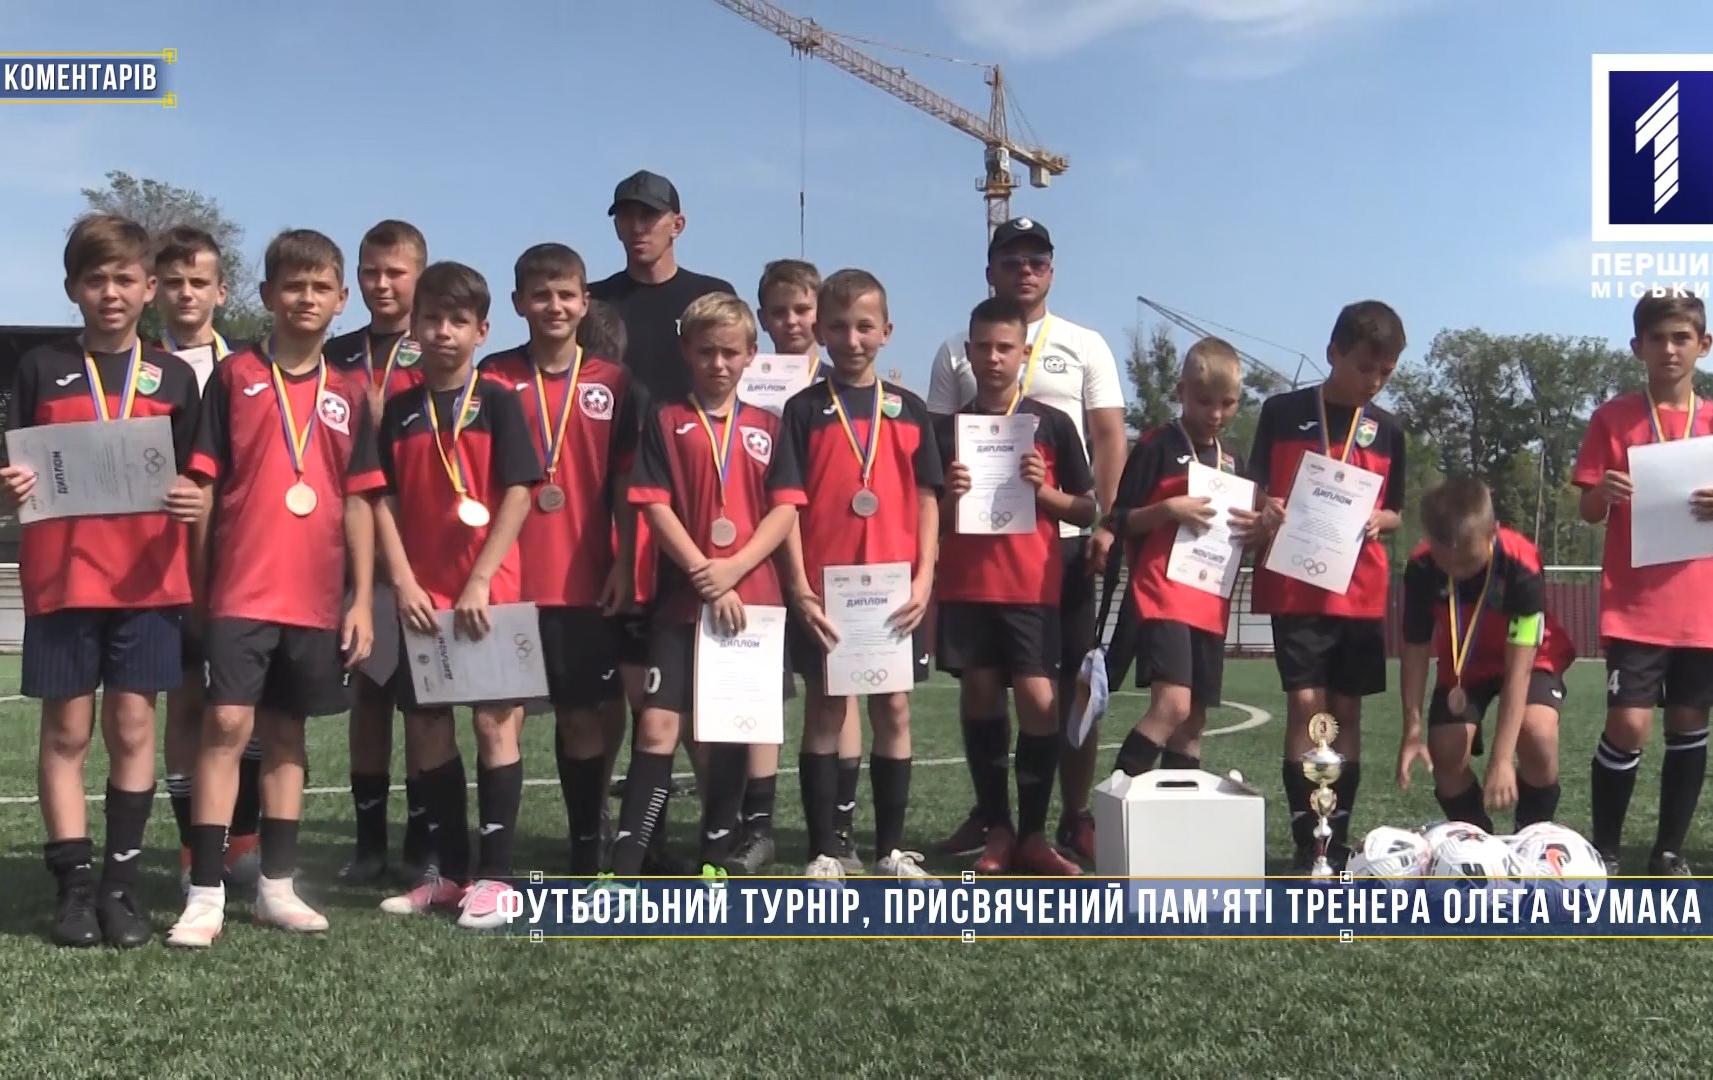 Без коментарів: футбольний турнір, присвячений пам’яті тренера Олега Чумака